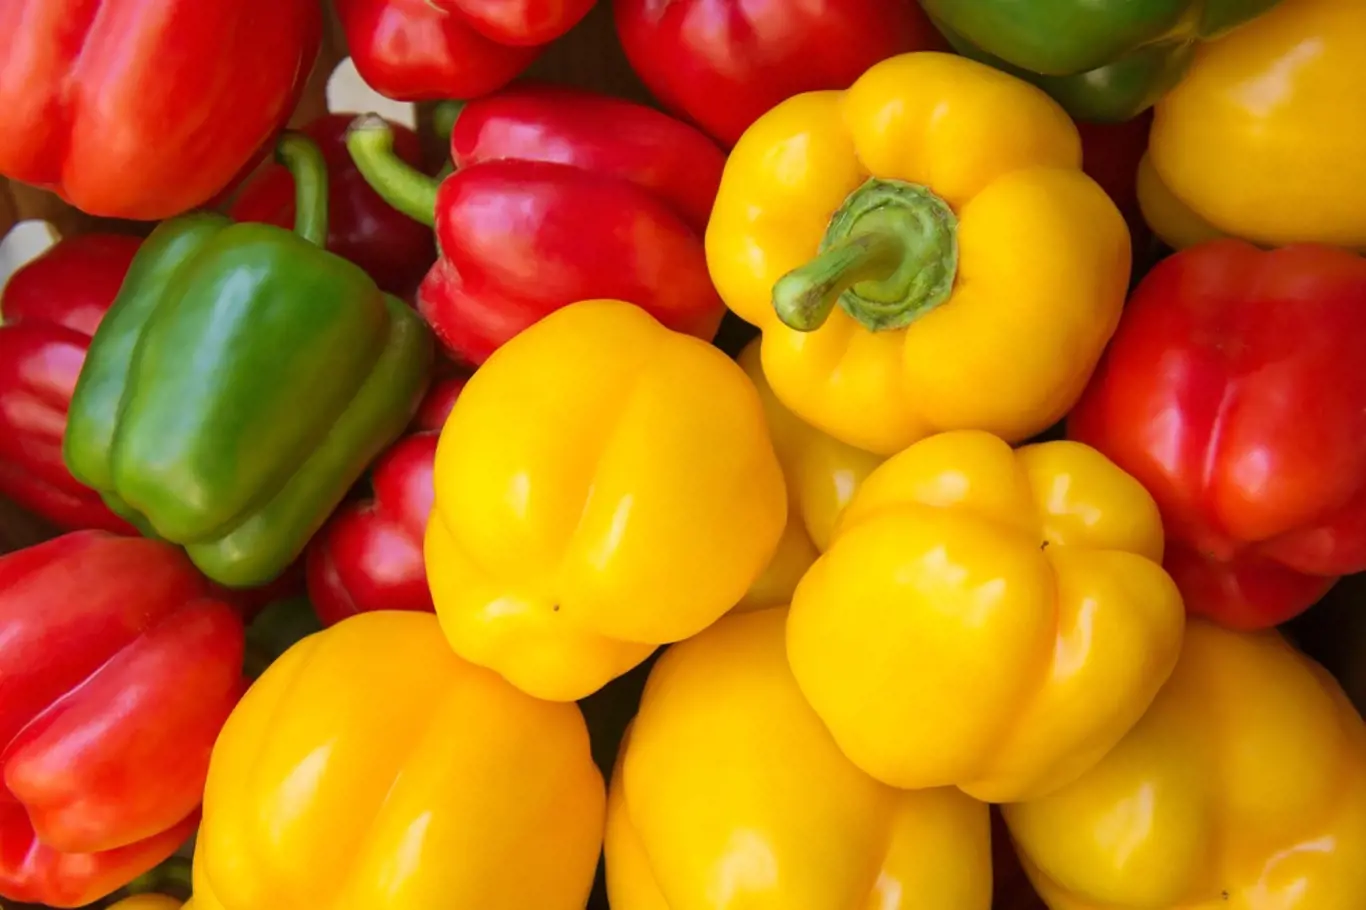 Cena paprik překročila 100 Kč za kilogram.